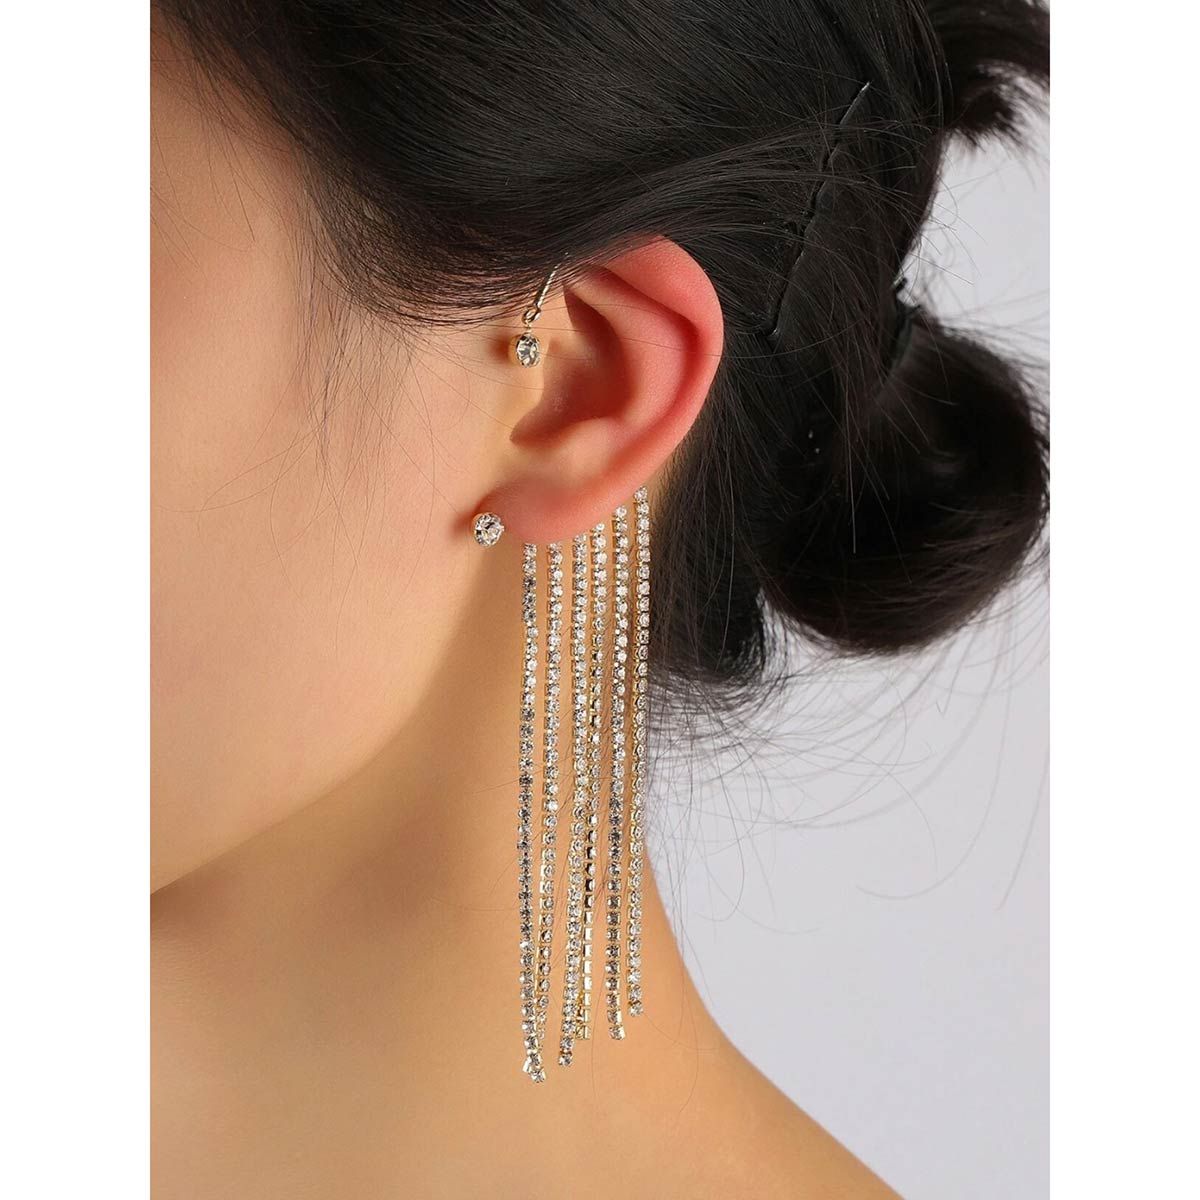 Oomph Jewellery Gold Tone Single Piece Crystal Chandelier Ear Cuff Earring